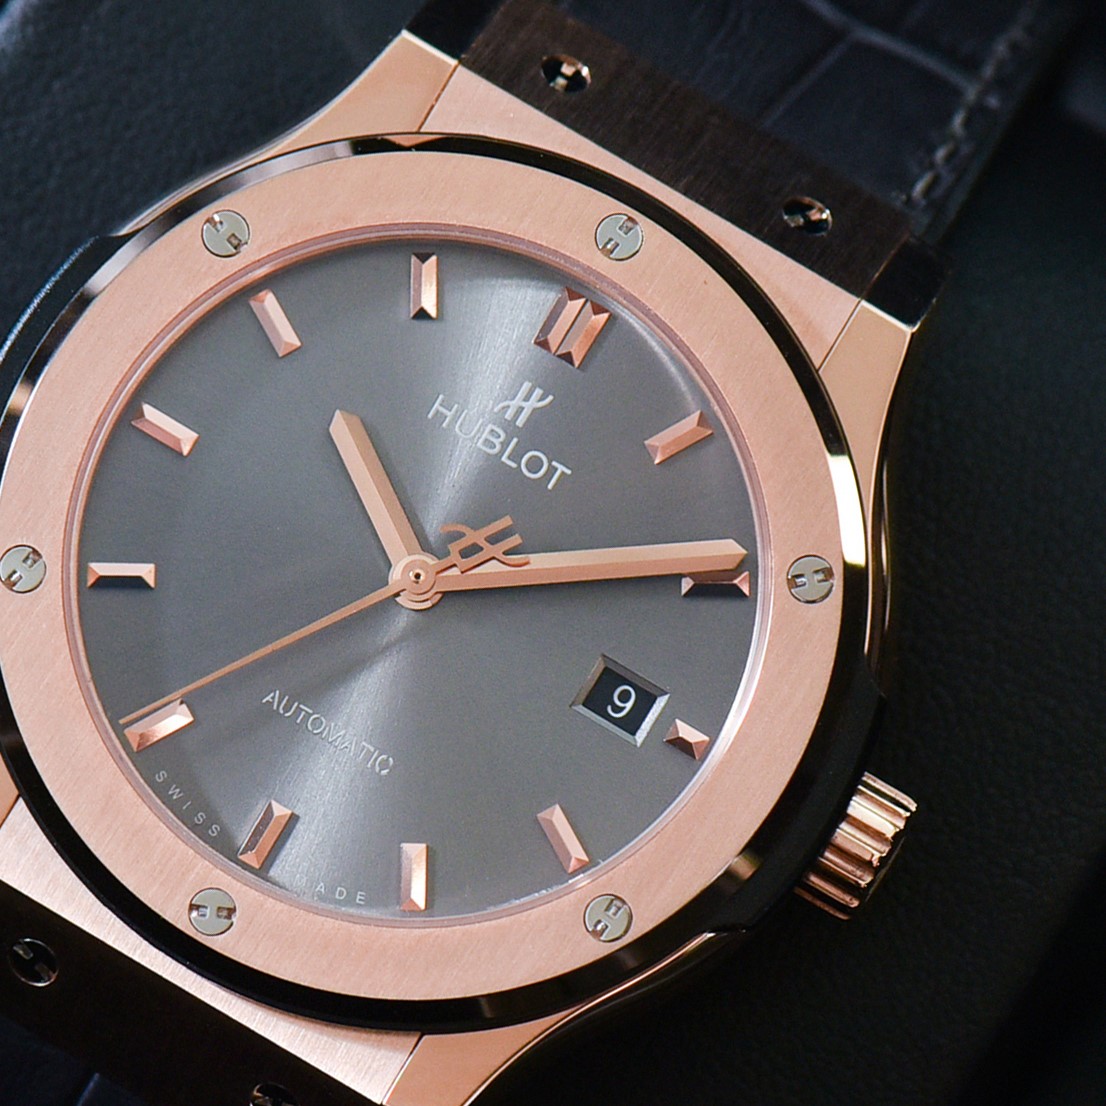 Chiếc đồng hồ Hublot fake King Gold với thiết kế đơn giản, dễ dàng phối với quần áo